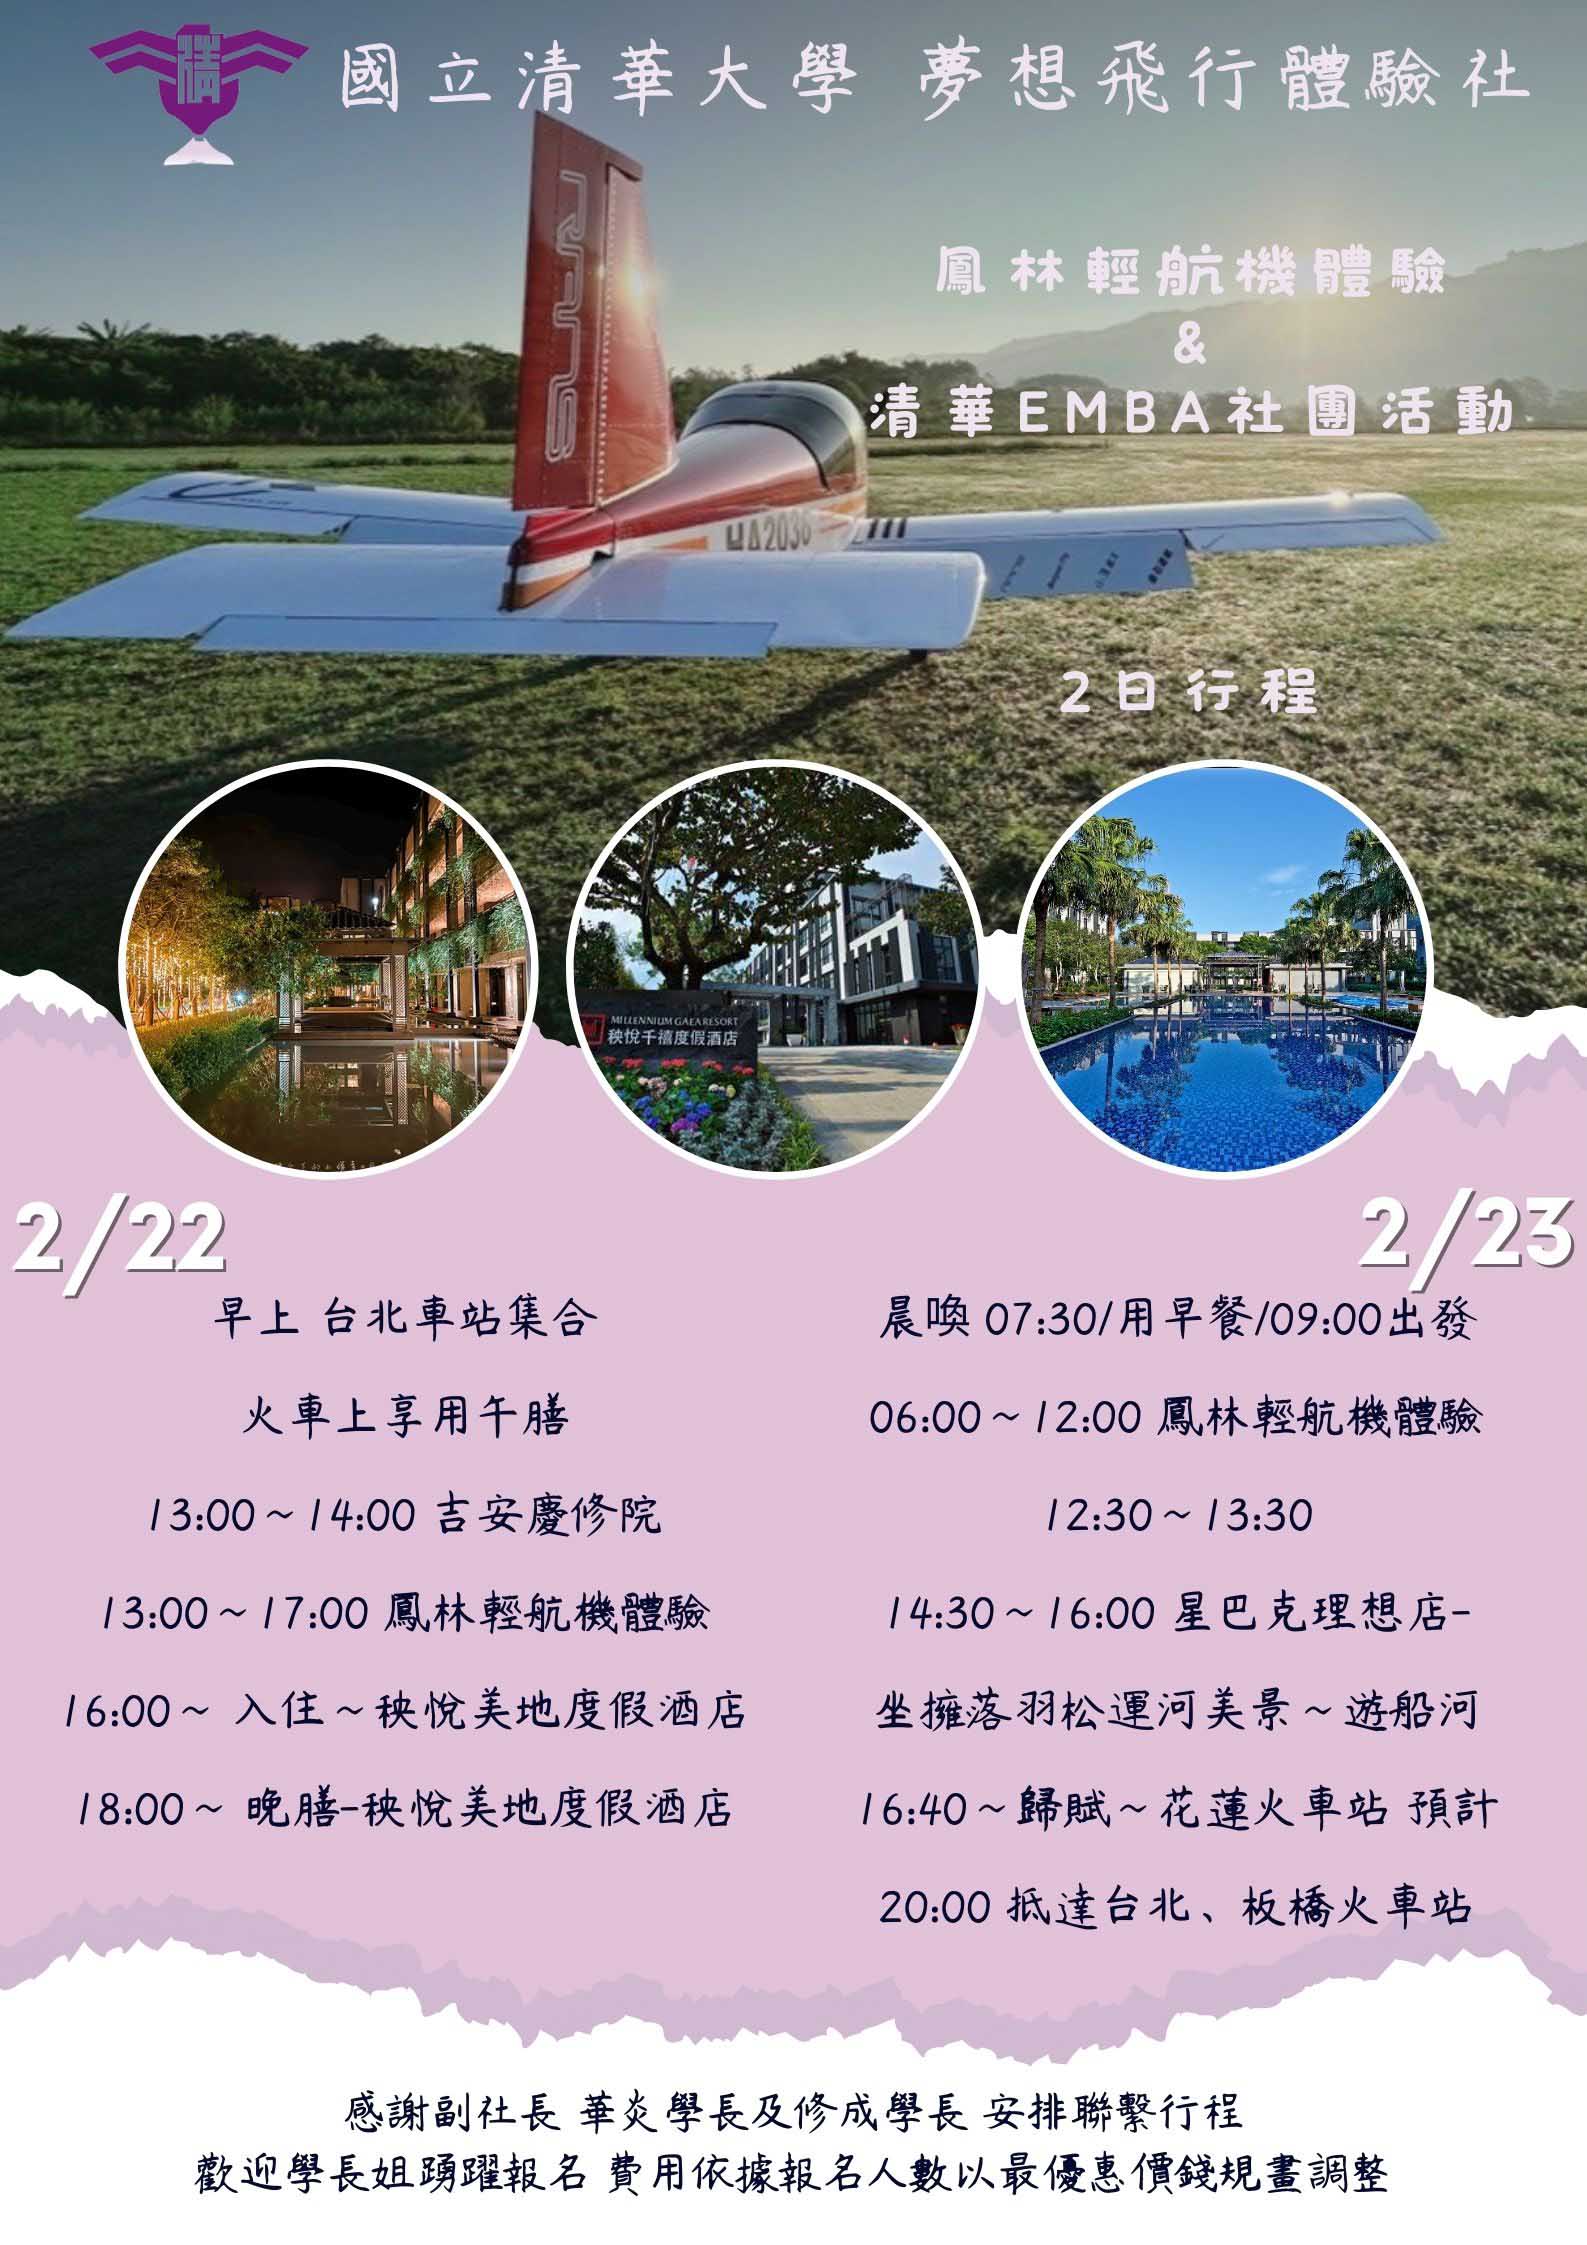 國立清華大學-夢想飛行體驗社